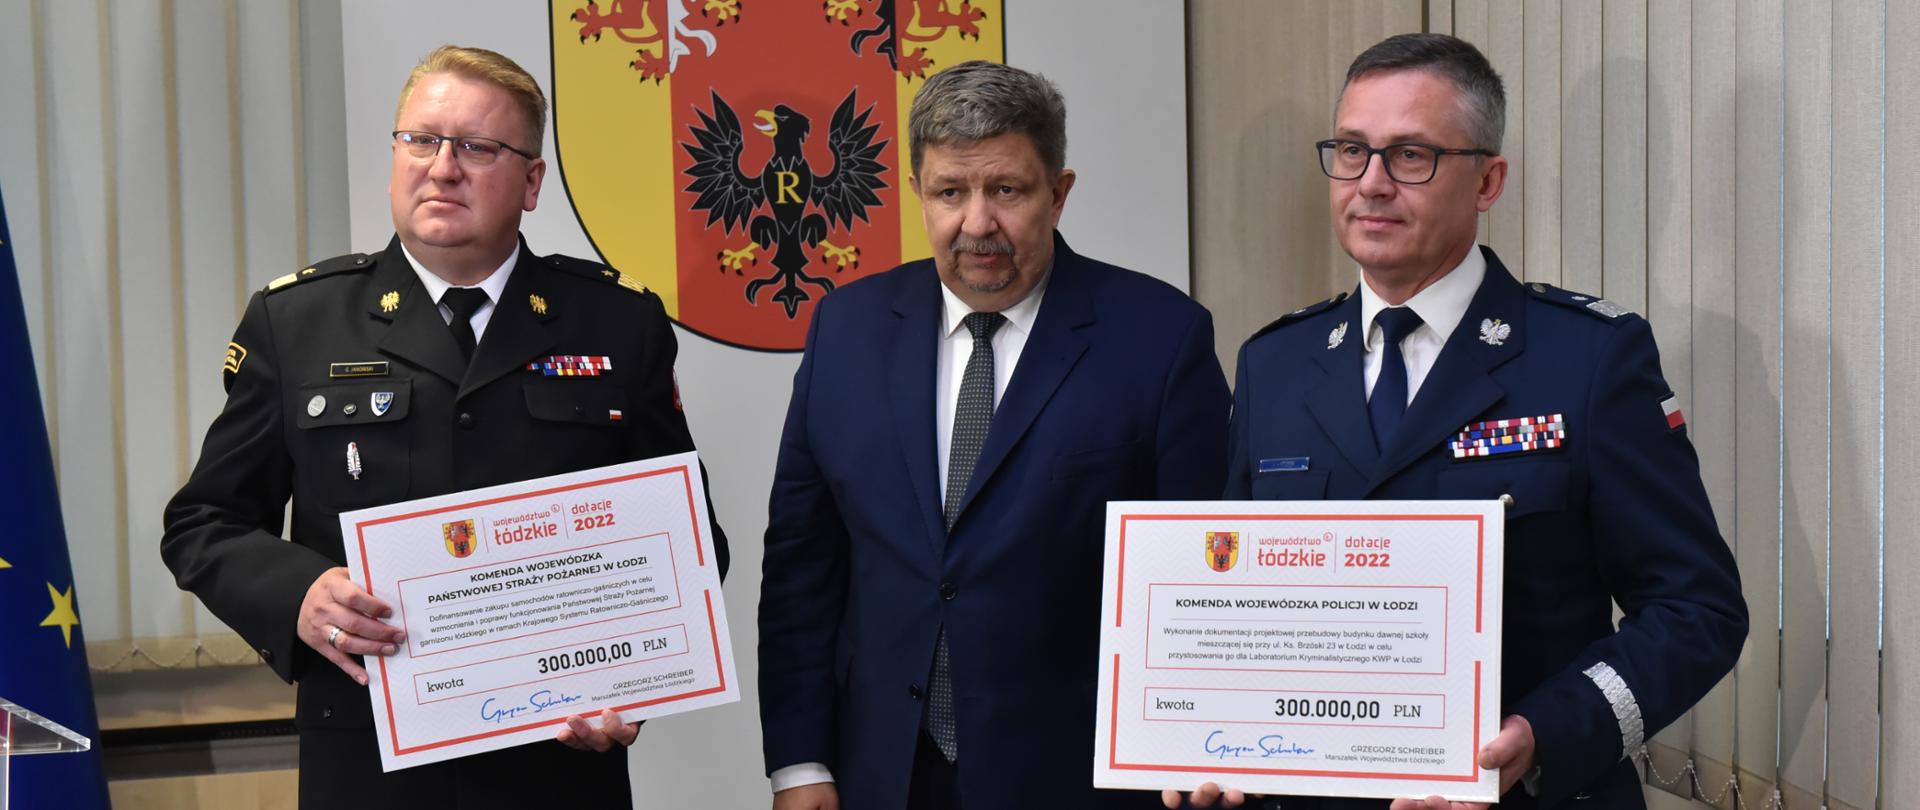 dwóch generałów straży pożarnej i policji oraz mężczyzna w garniturze, mężczyzna stoi pomiędzy generałami, którzy trzymają tabliczkę z kwotą dotacji 300000 złotych, w tle na ścianie herb województwa łódzkiego 